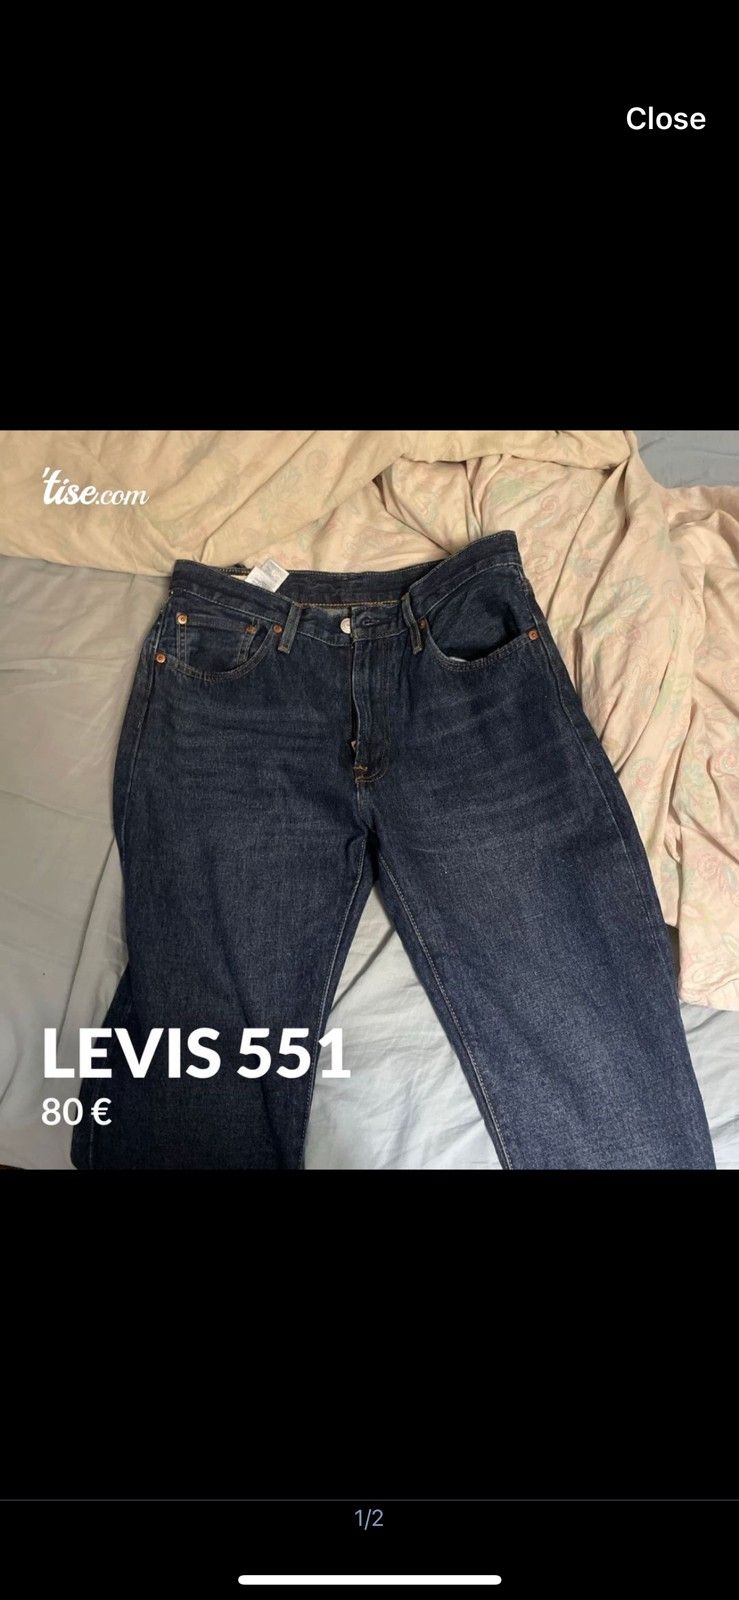 Levis 551